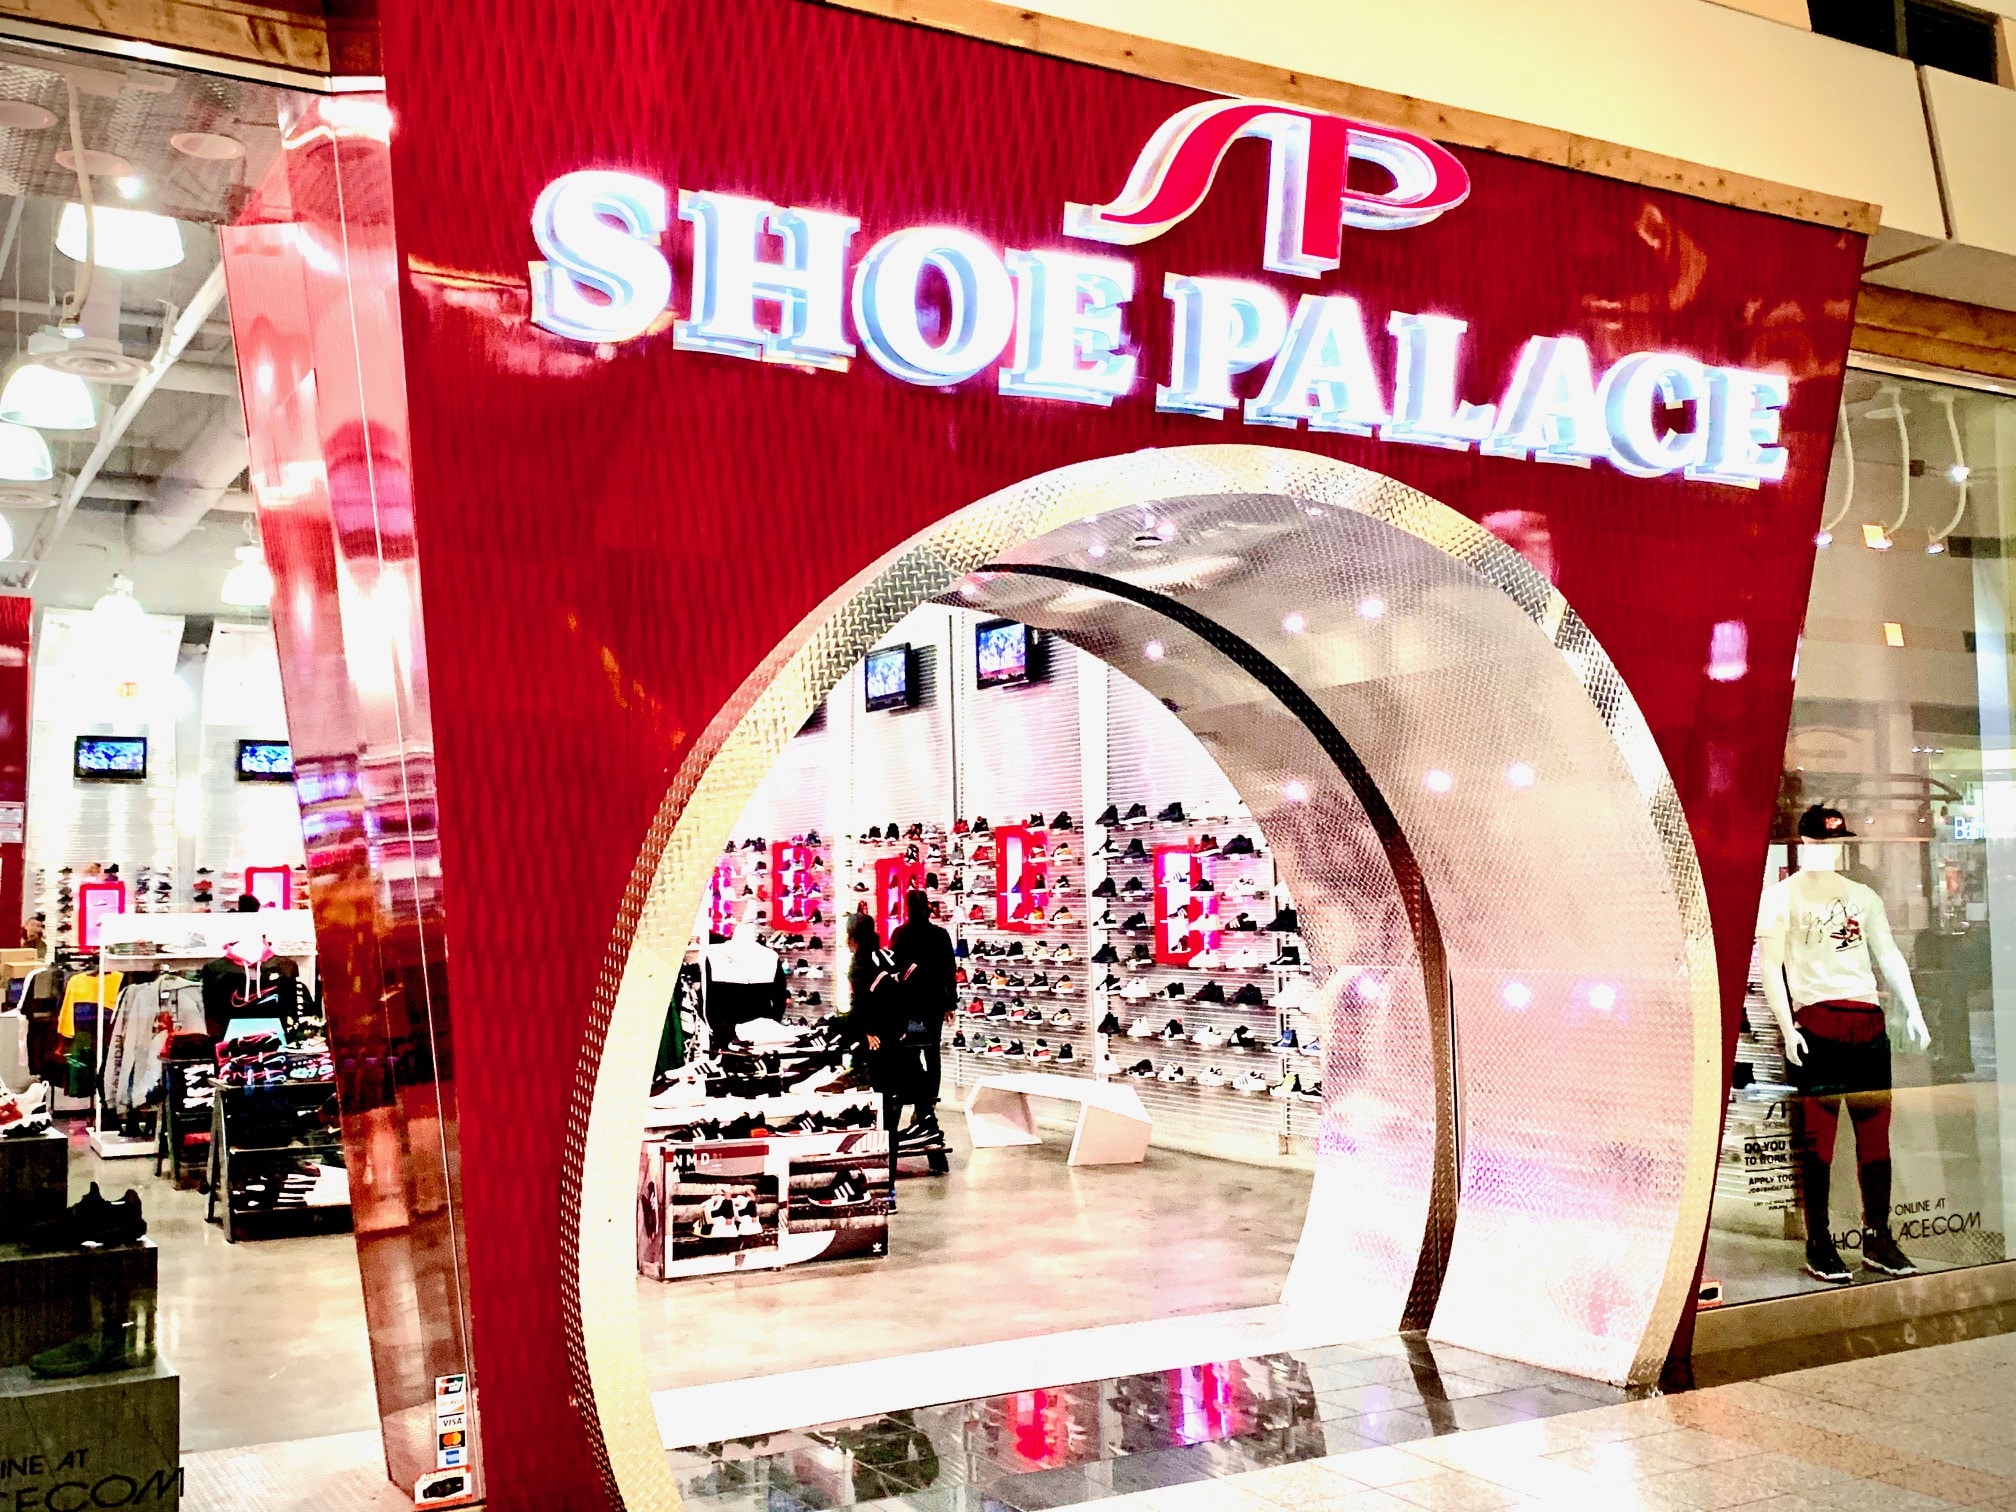 Shoe Palace Mall